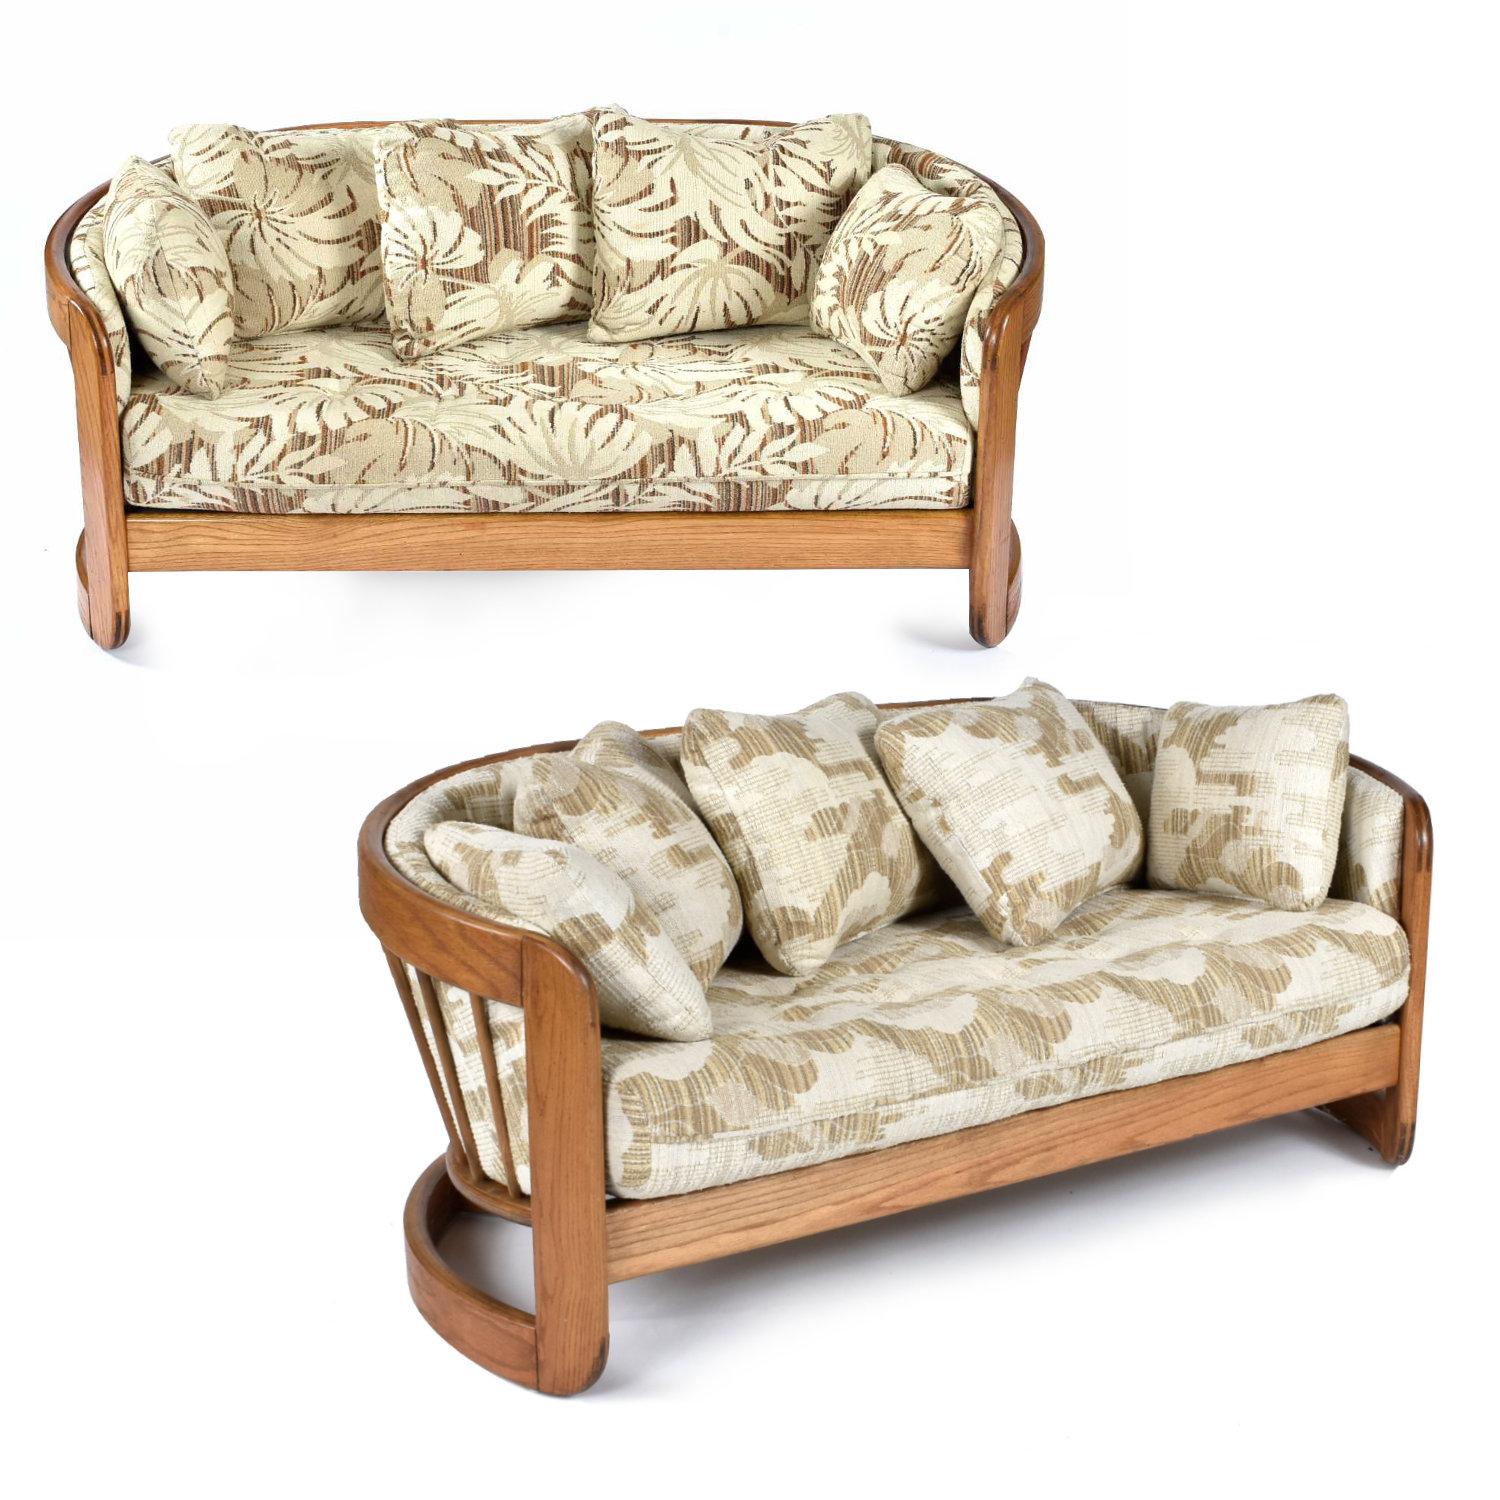 Ein Paar geschwungene Sofas aus massiver Eiche von Howard Furniture. Durch die geschwungene Form sind die beiden Sessel ideal für die Aufstellung als Paar. Die Halbmondform und die großzügigen Kissen schaffen eine gemütliche, intime Sitzgelegenheit.